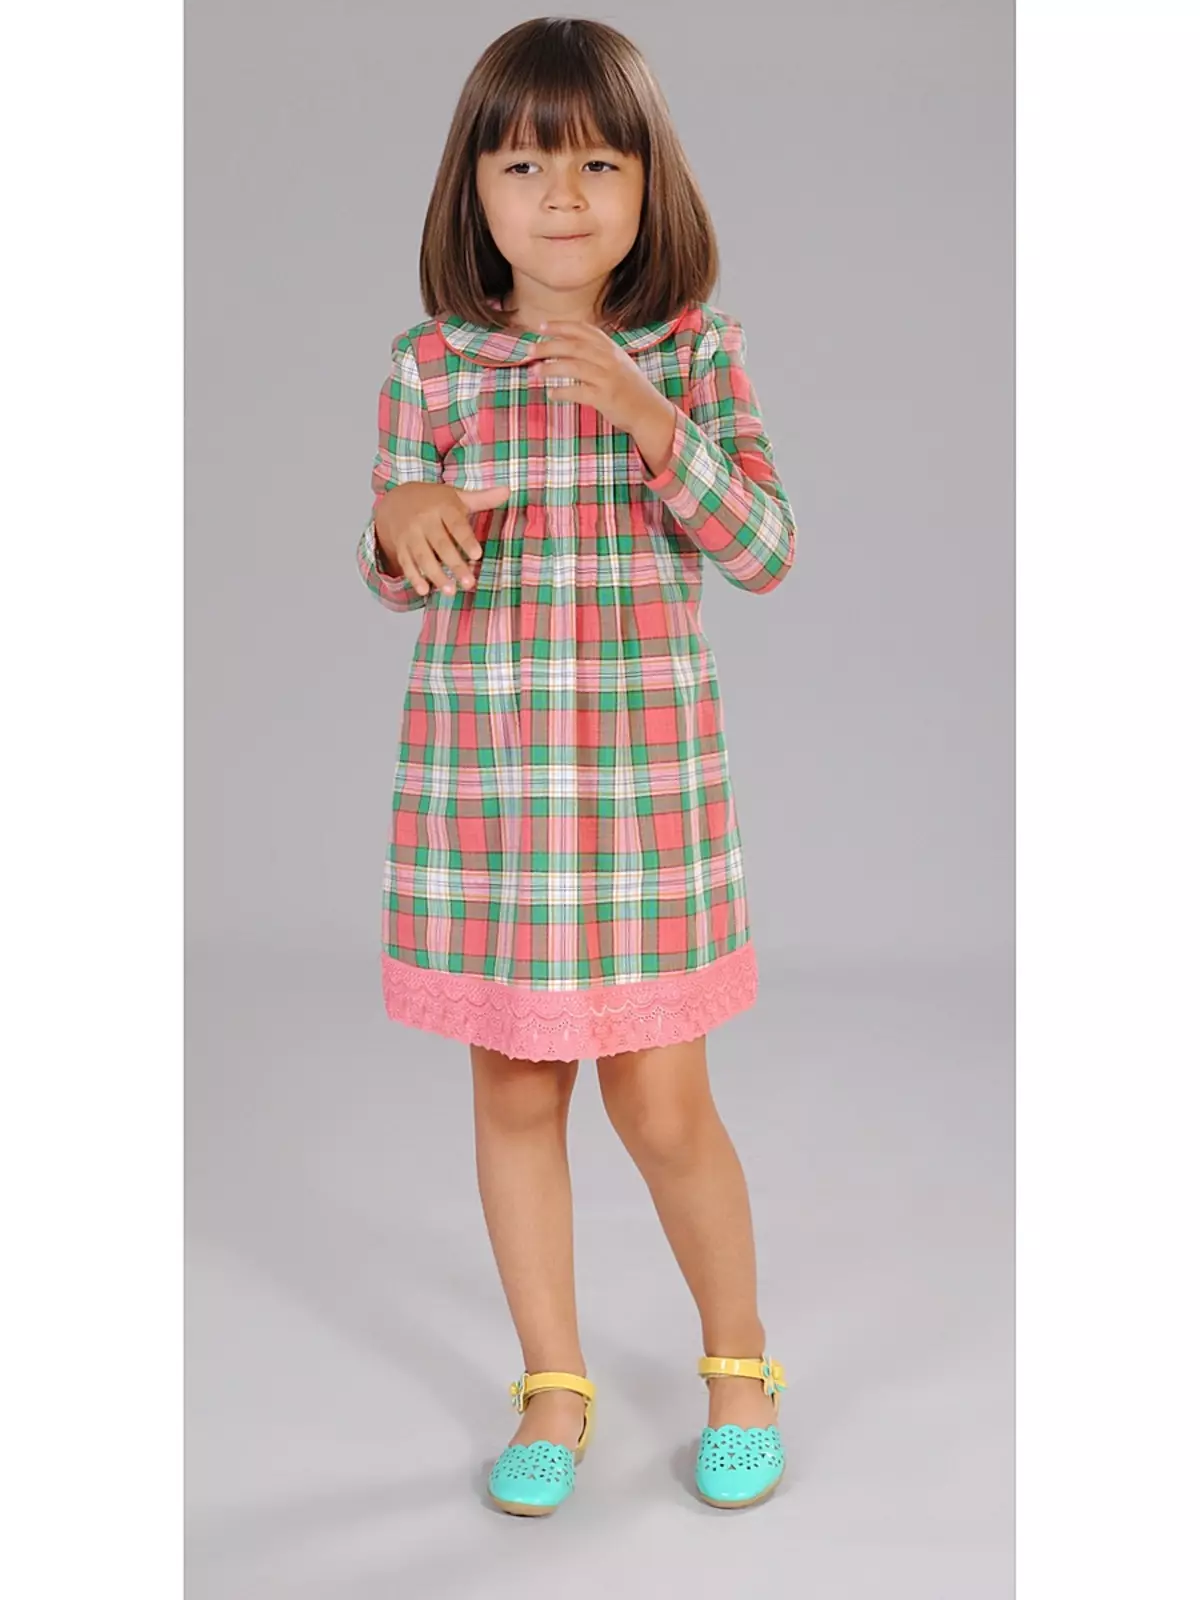 Cutie Susie (52 fotos): Uniforme da escola, vestidos, trajes e roupas para crianças para meninas 7 anos, produto 3792_29